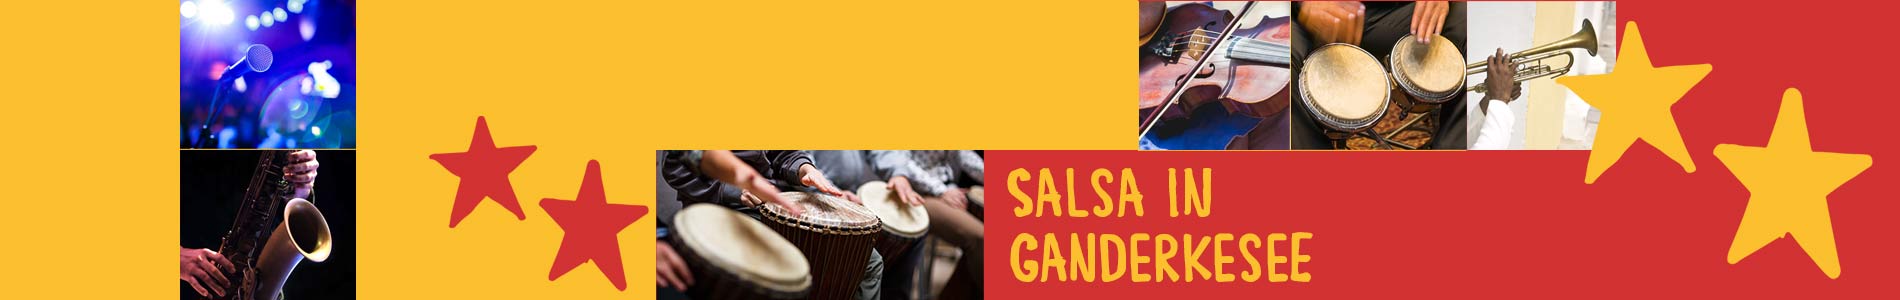 Salsa in Ganderkesee – Salsa lernen und tanzen, Tanzkurse, Partys, Veranstaltungen